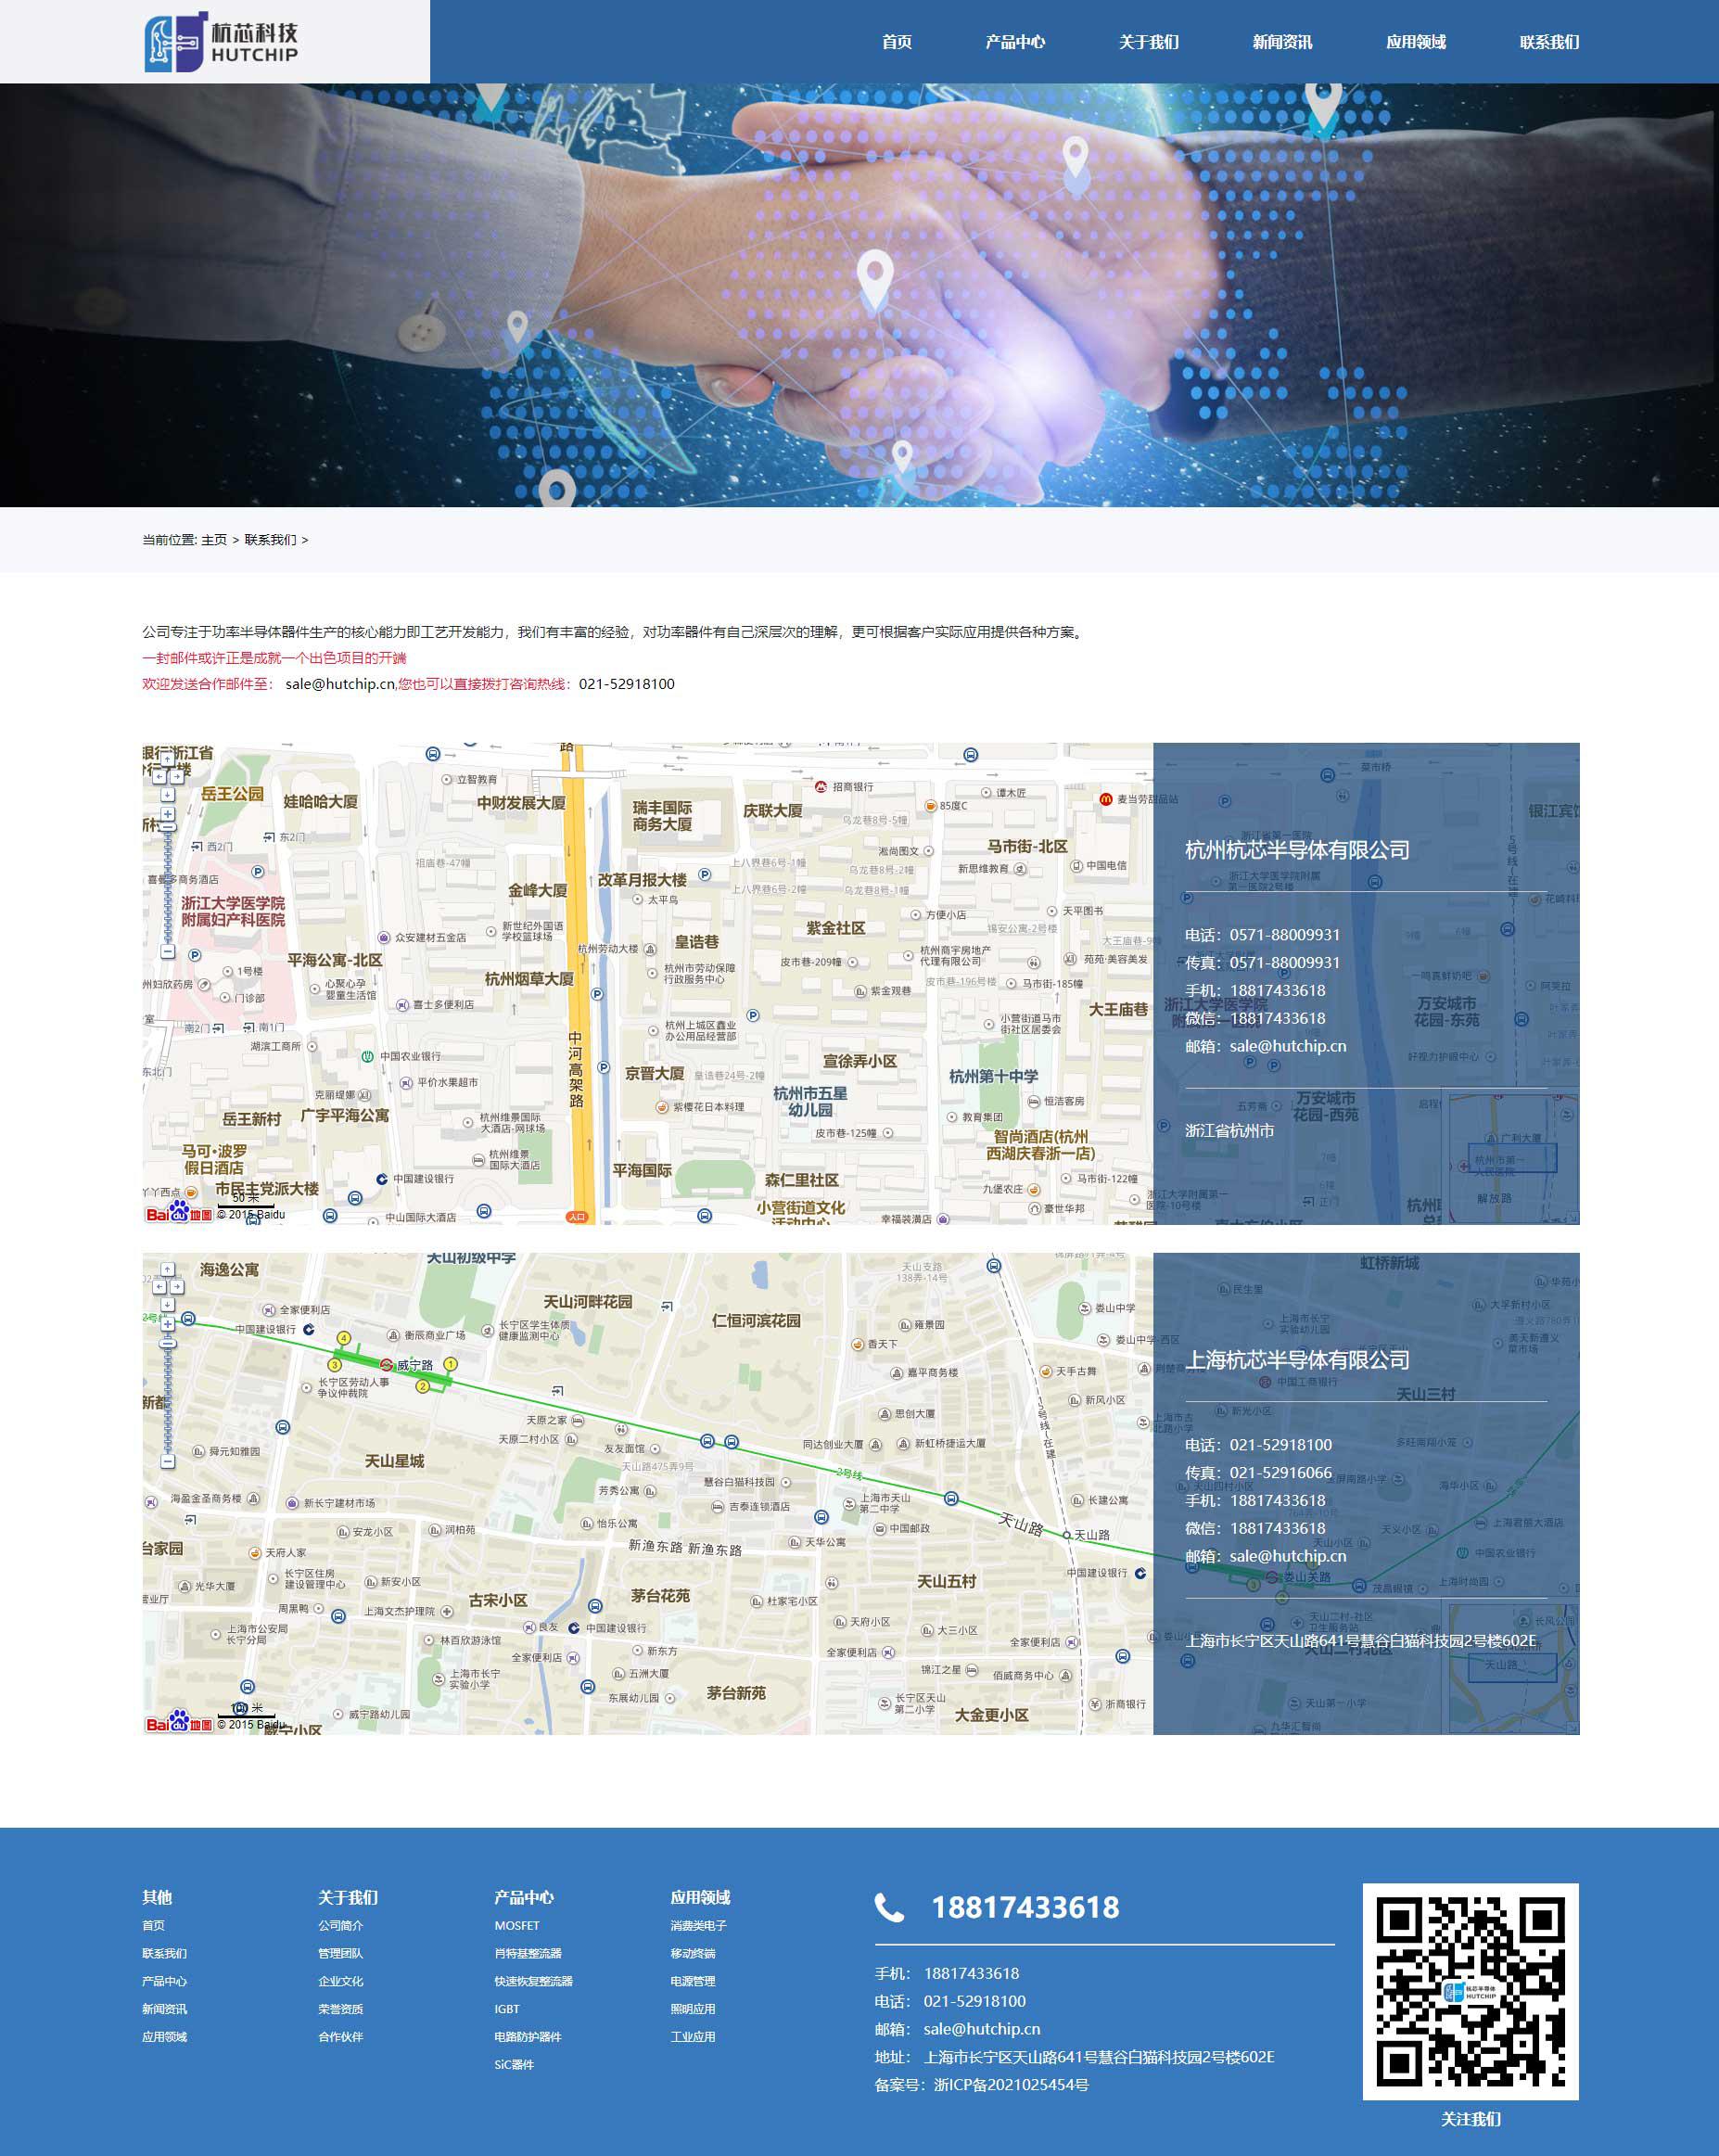 苏州网站建设公司为杭州杭芯制作的官网联系我们页面